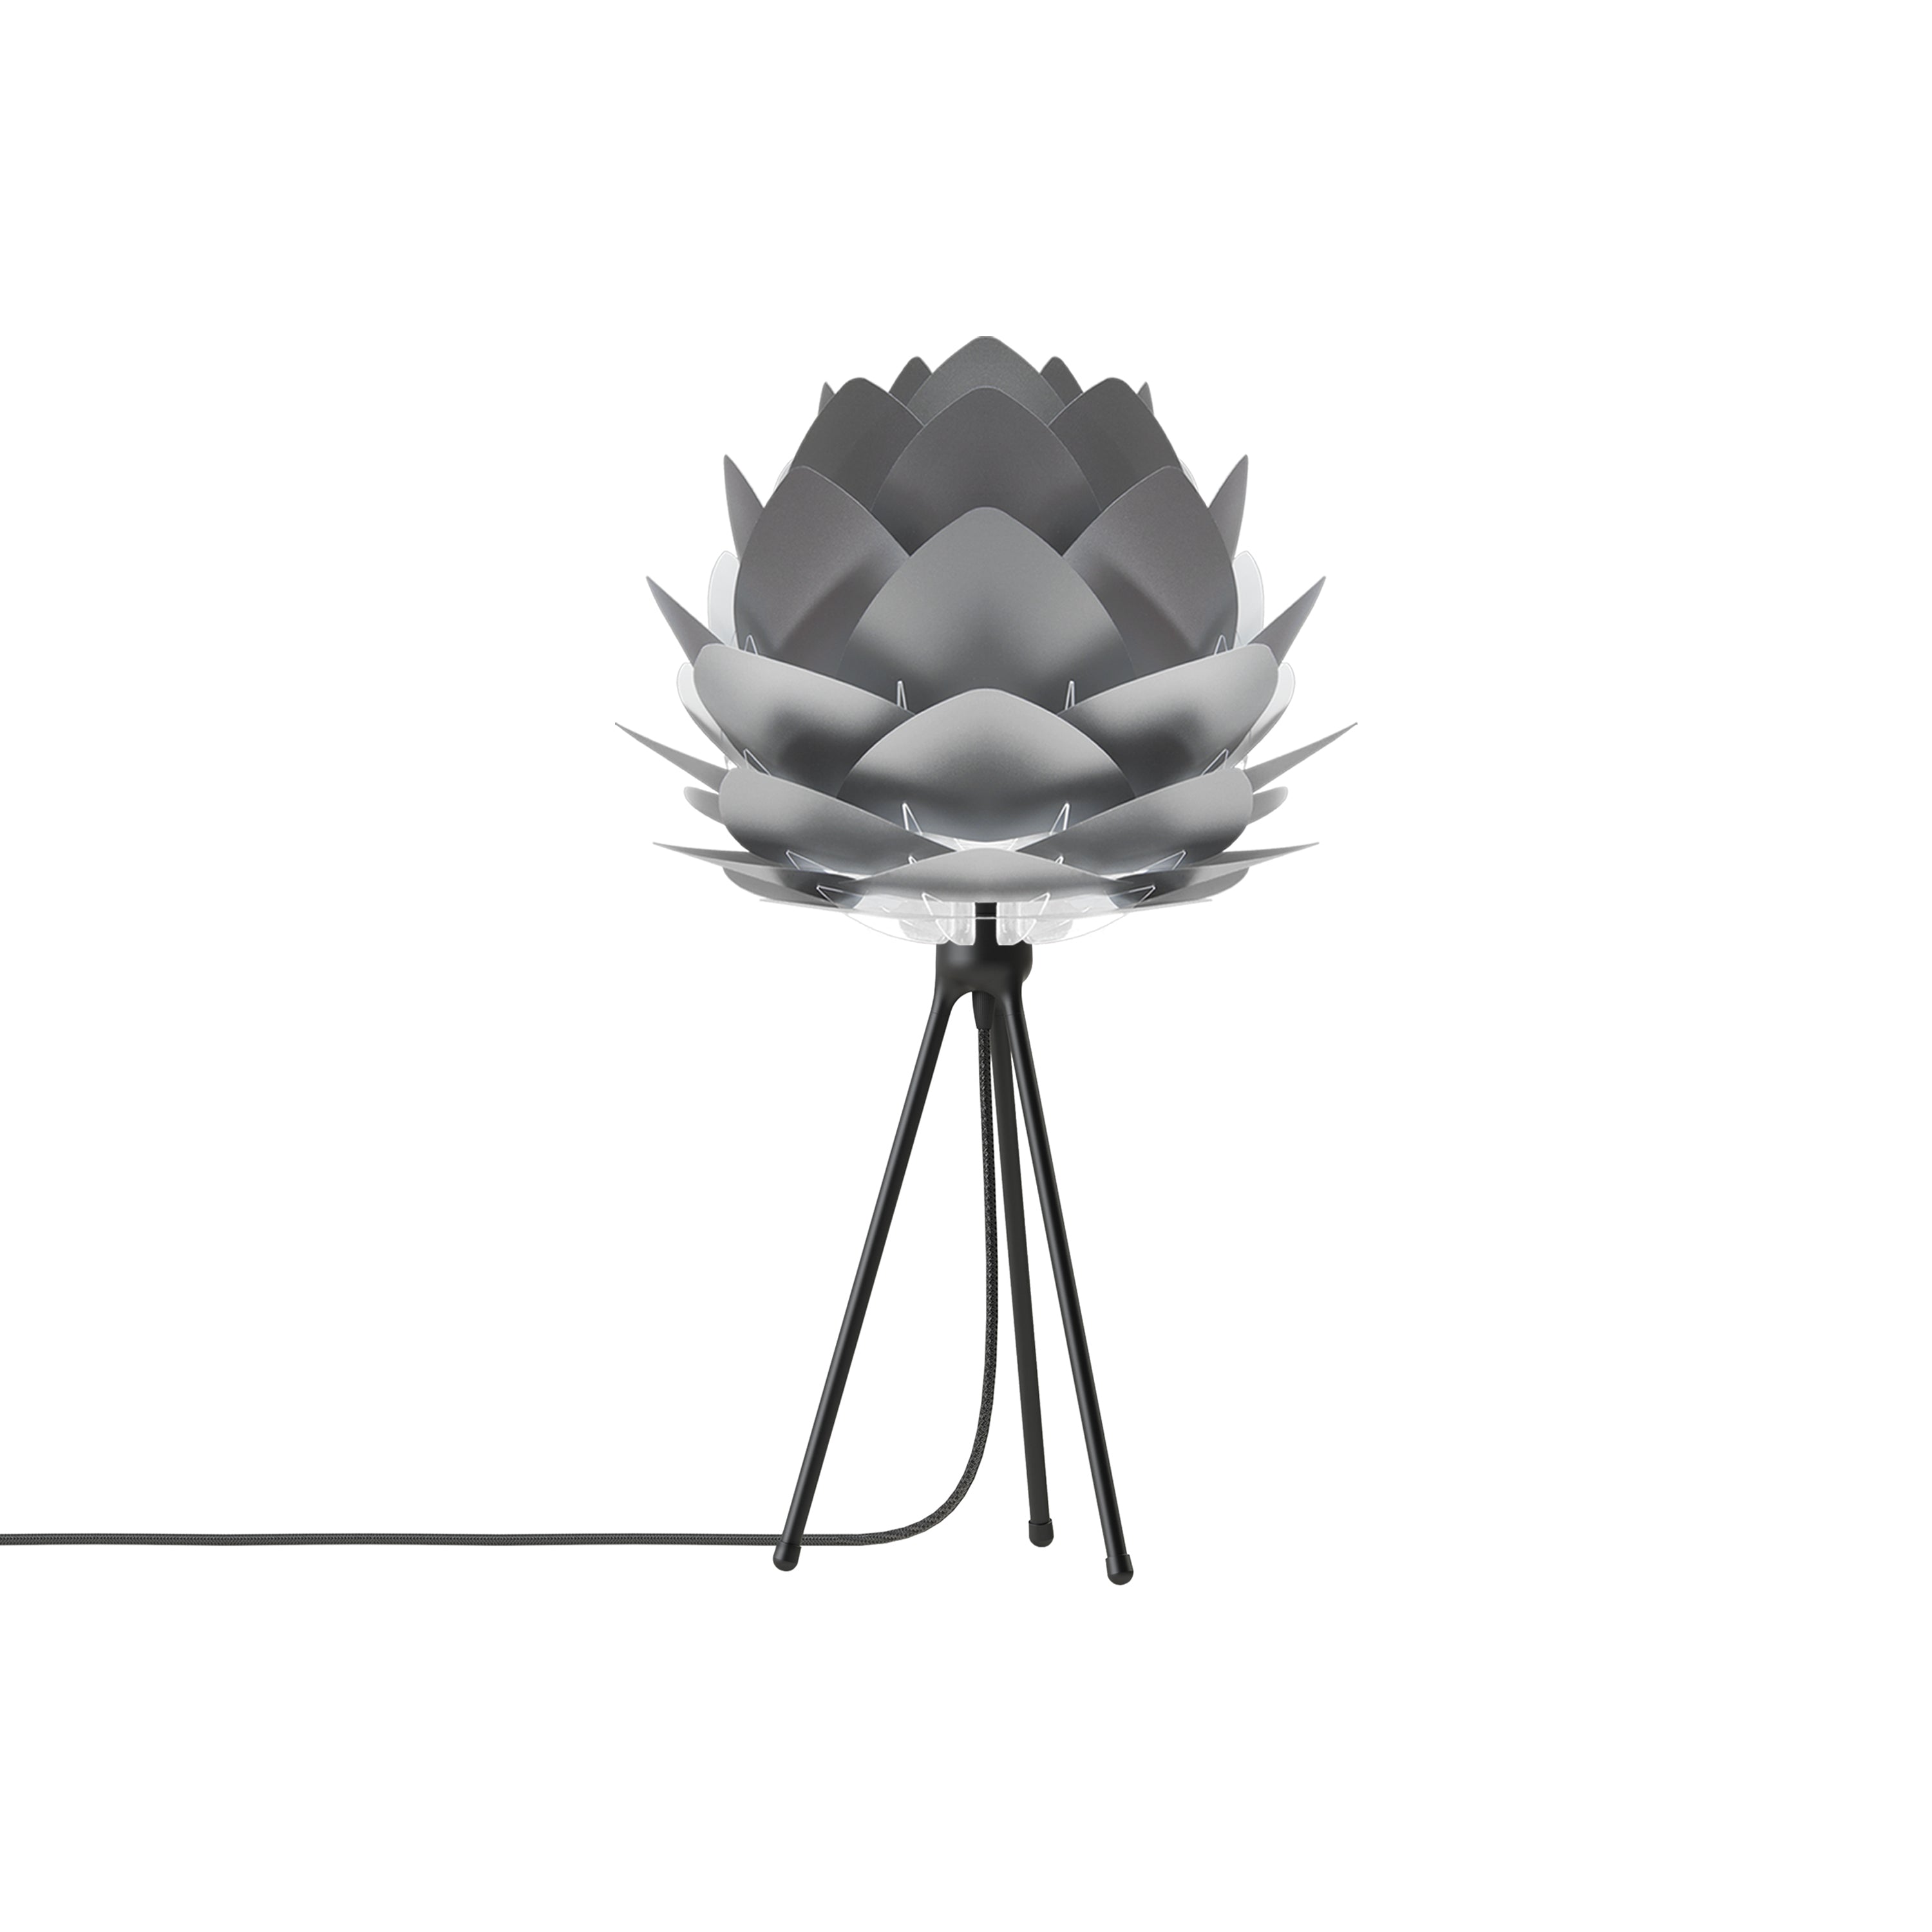 Silvia Tripod Table Lamp: Medium - 17.7